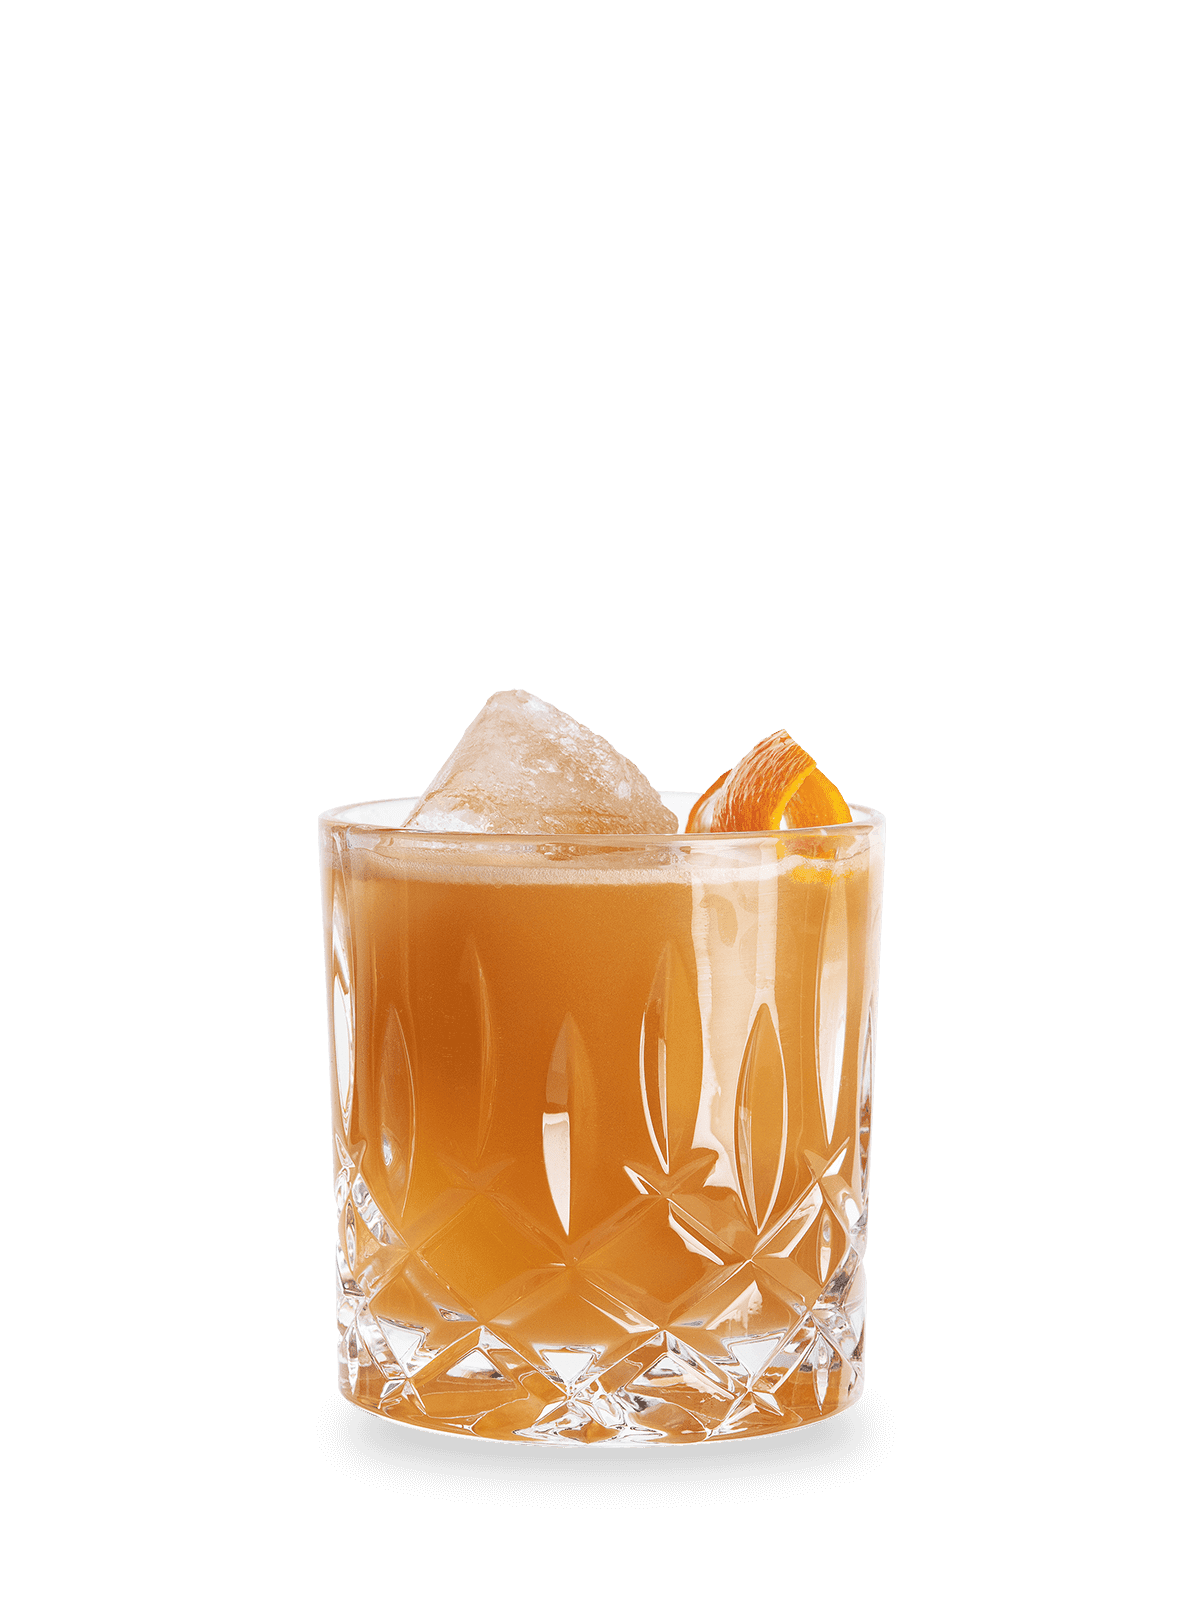 Whisky Cocktail Rezept Australian Date